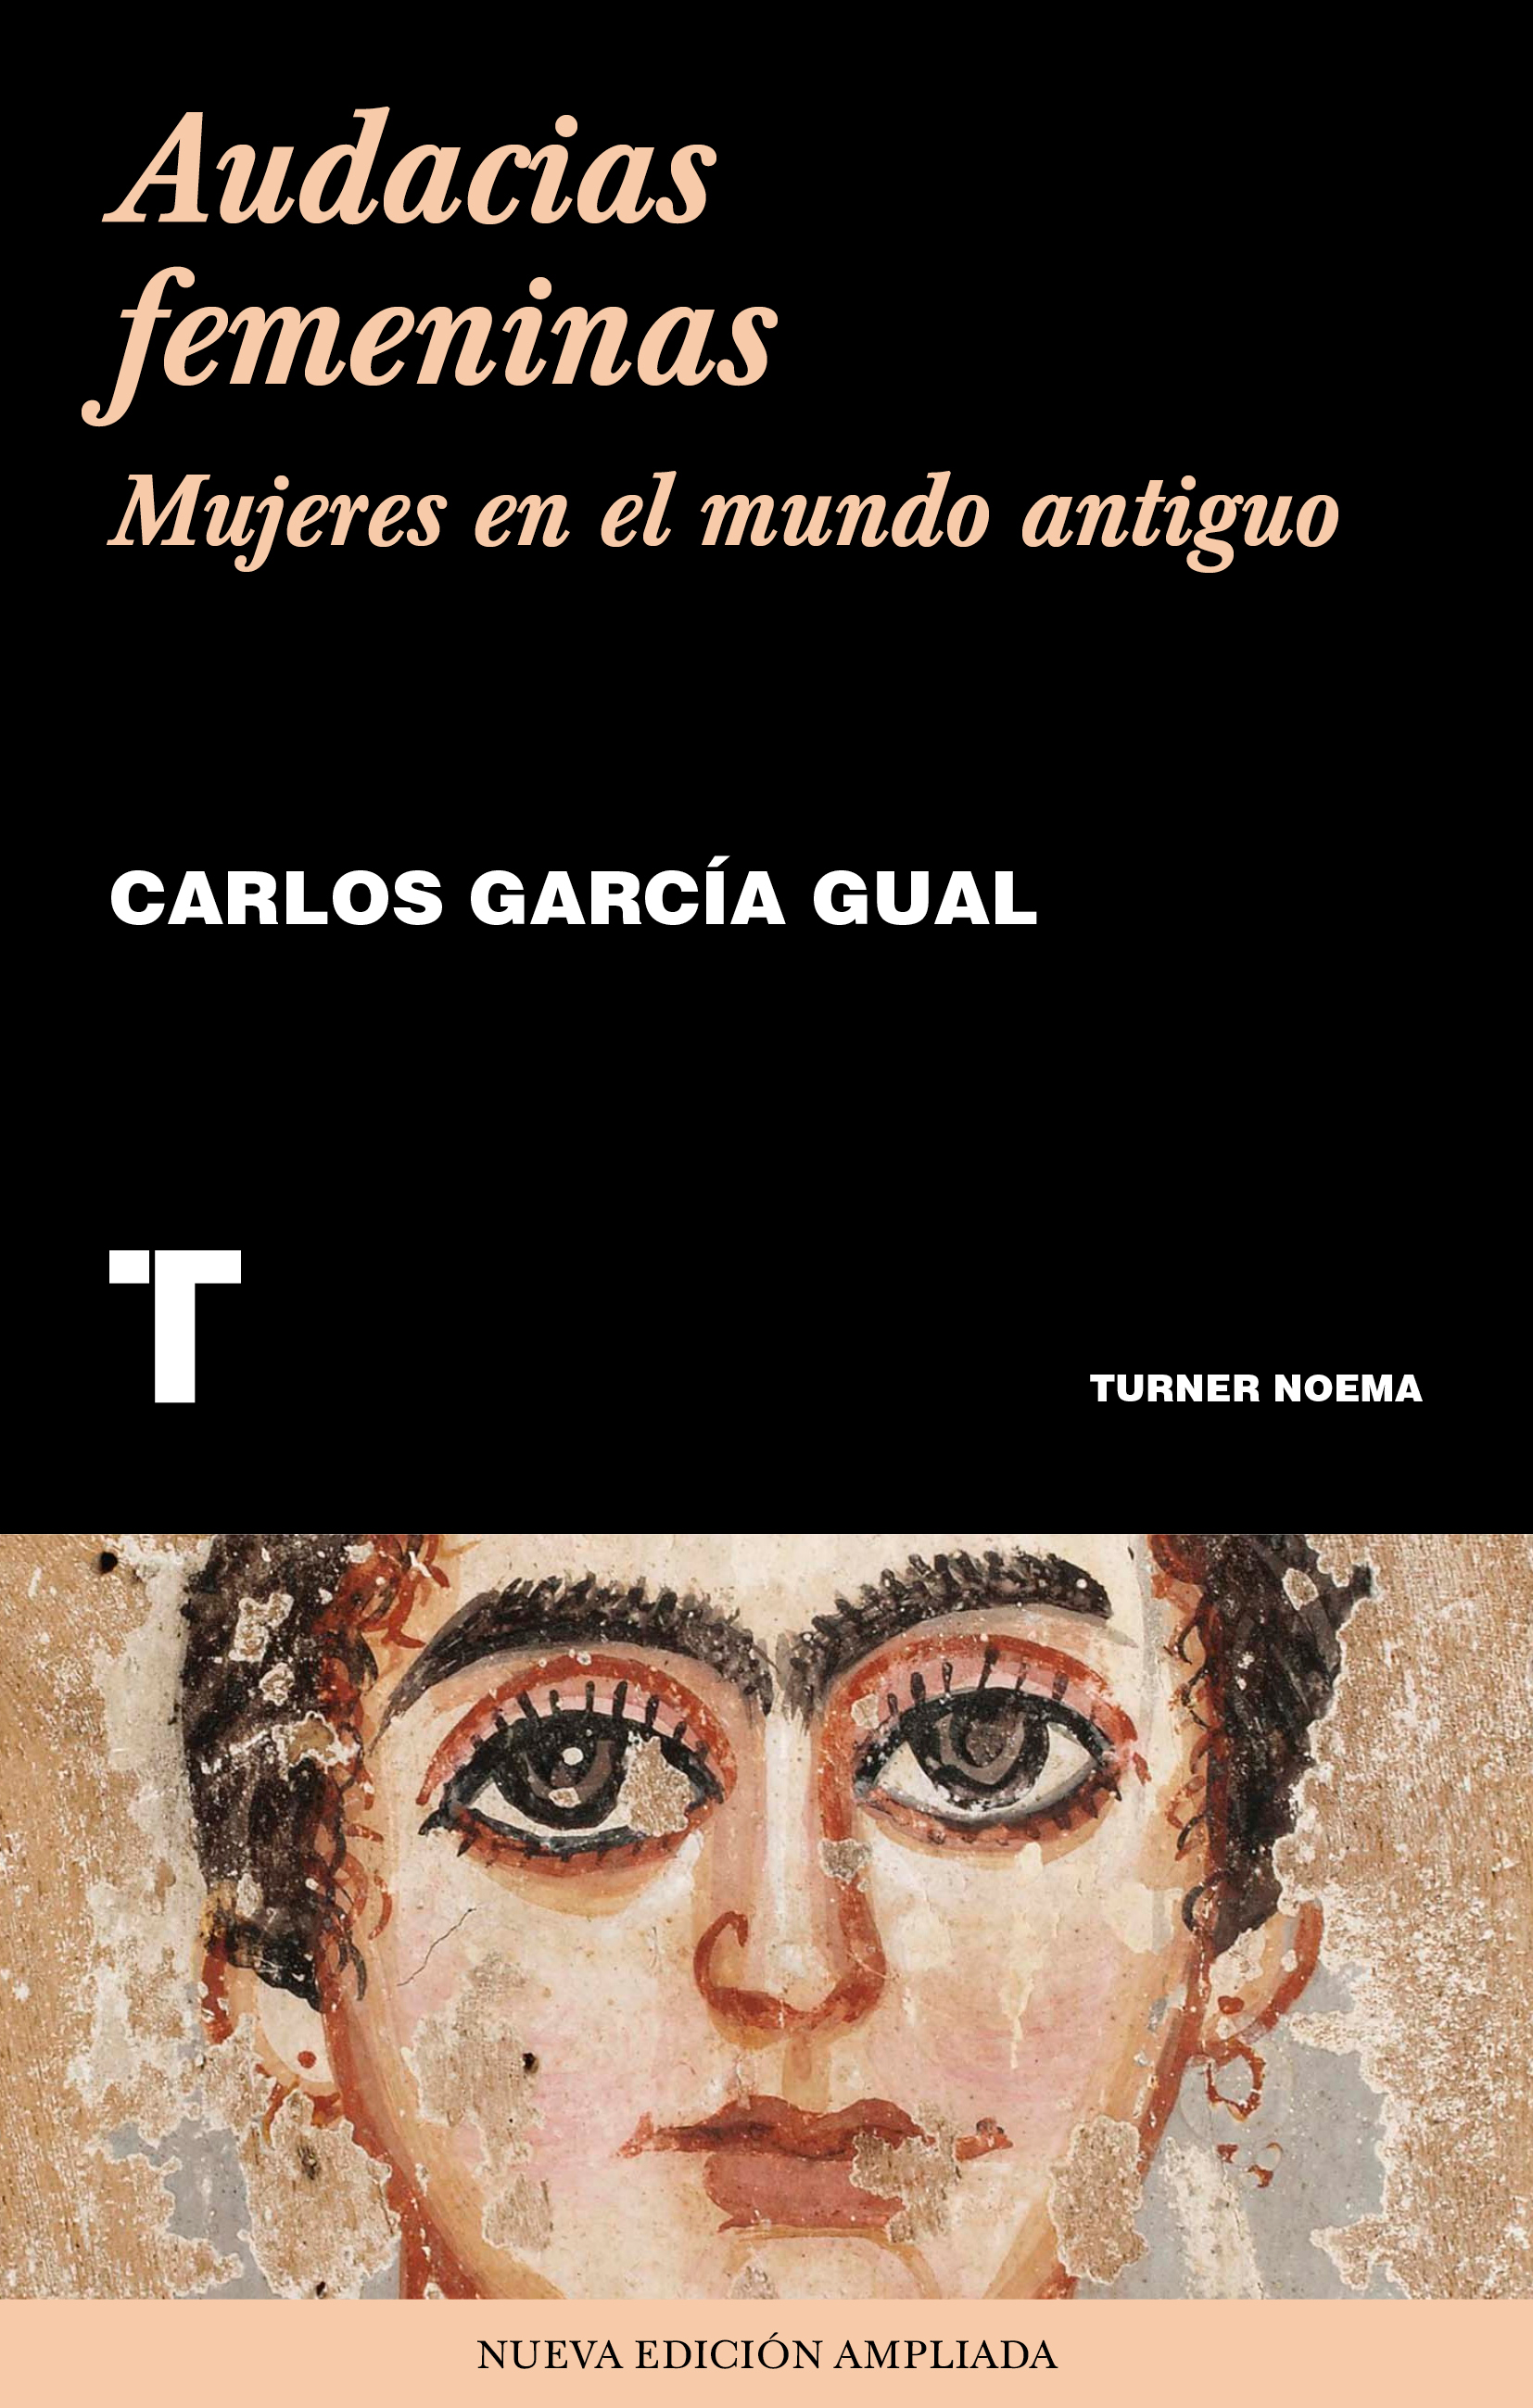 CARLOS GARCÍA GUAL. Audacias femeninas. Mujeres en el mundo antiguo (Turner)